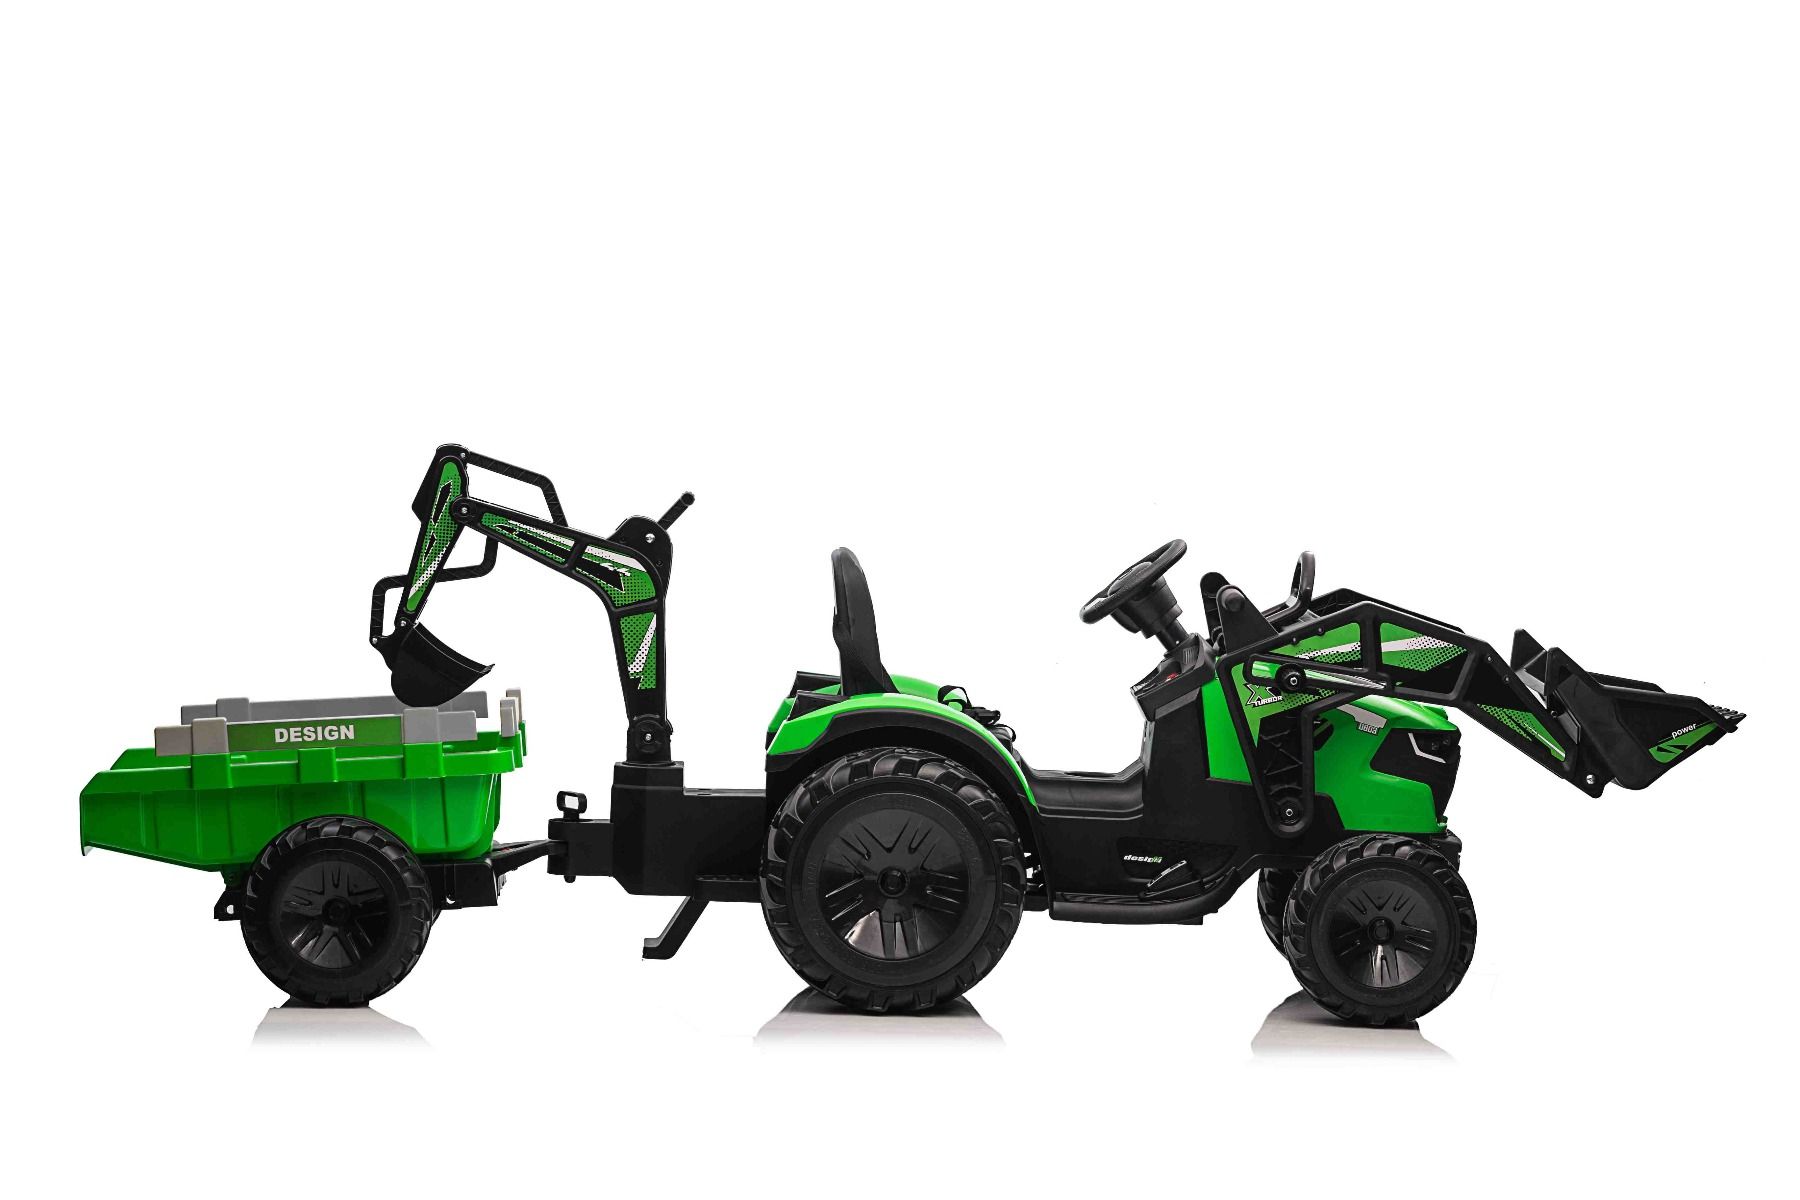 Elektrischer Traktor TOP-WORKER 12V mit Front-/Hecklader und Anhänger,  Einsitzer, grün, weicher PU-Sitz, MP3-Player mit USB-Eingang,  Hinterradantrieb, 2 x 45W Motor, EVA-Räder, 12V / 10Ah Akku